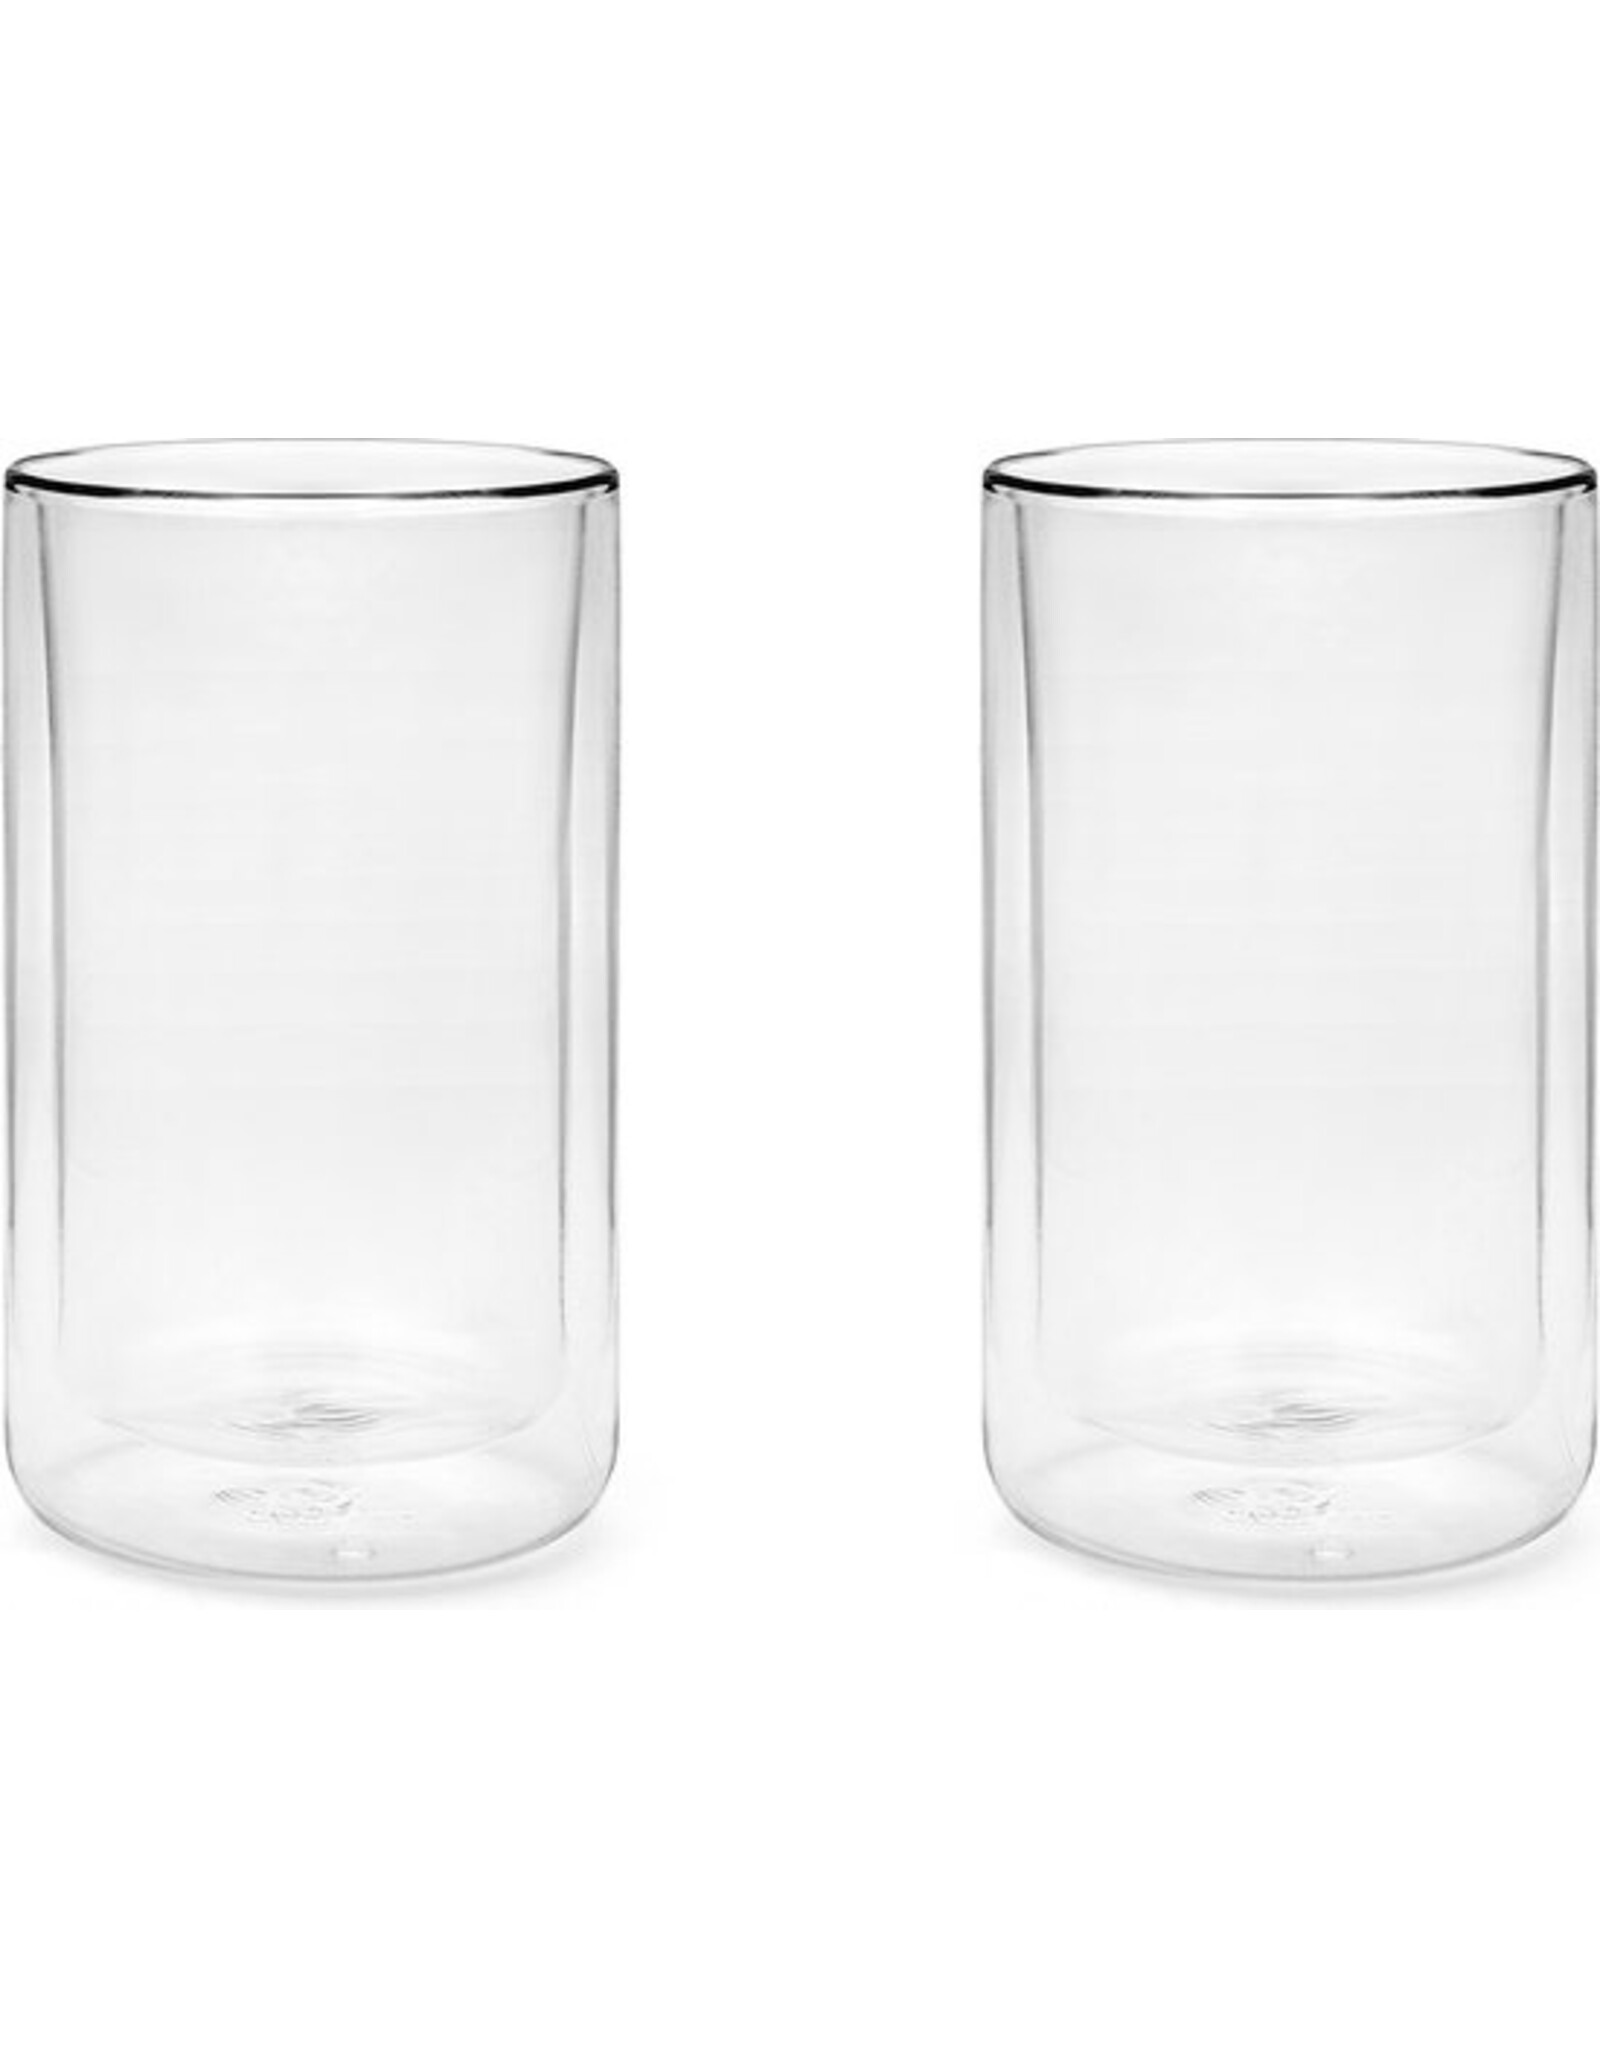 Bredemeijer Dubbelwandig Glas San Remo 400ml - 2 Stuks